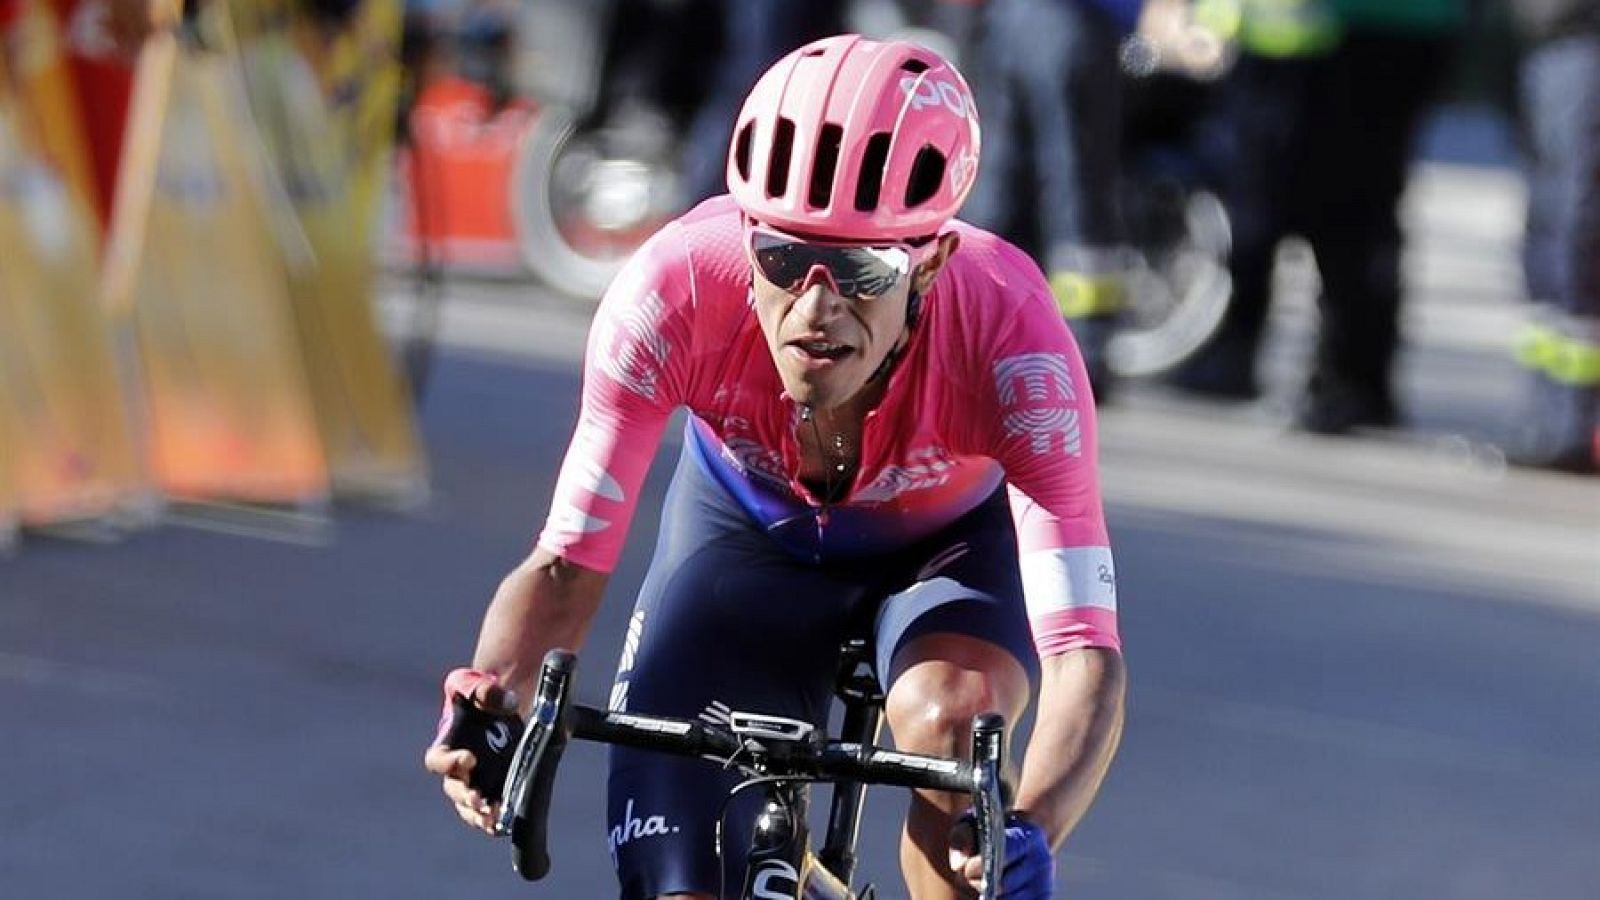 El corredor del Education First, Daniel Felipe Martínez no tomará salida en la etapa 4 de La Vuelta a España 2020